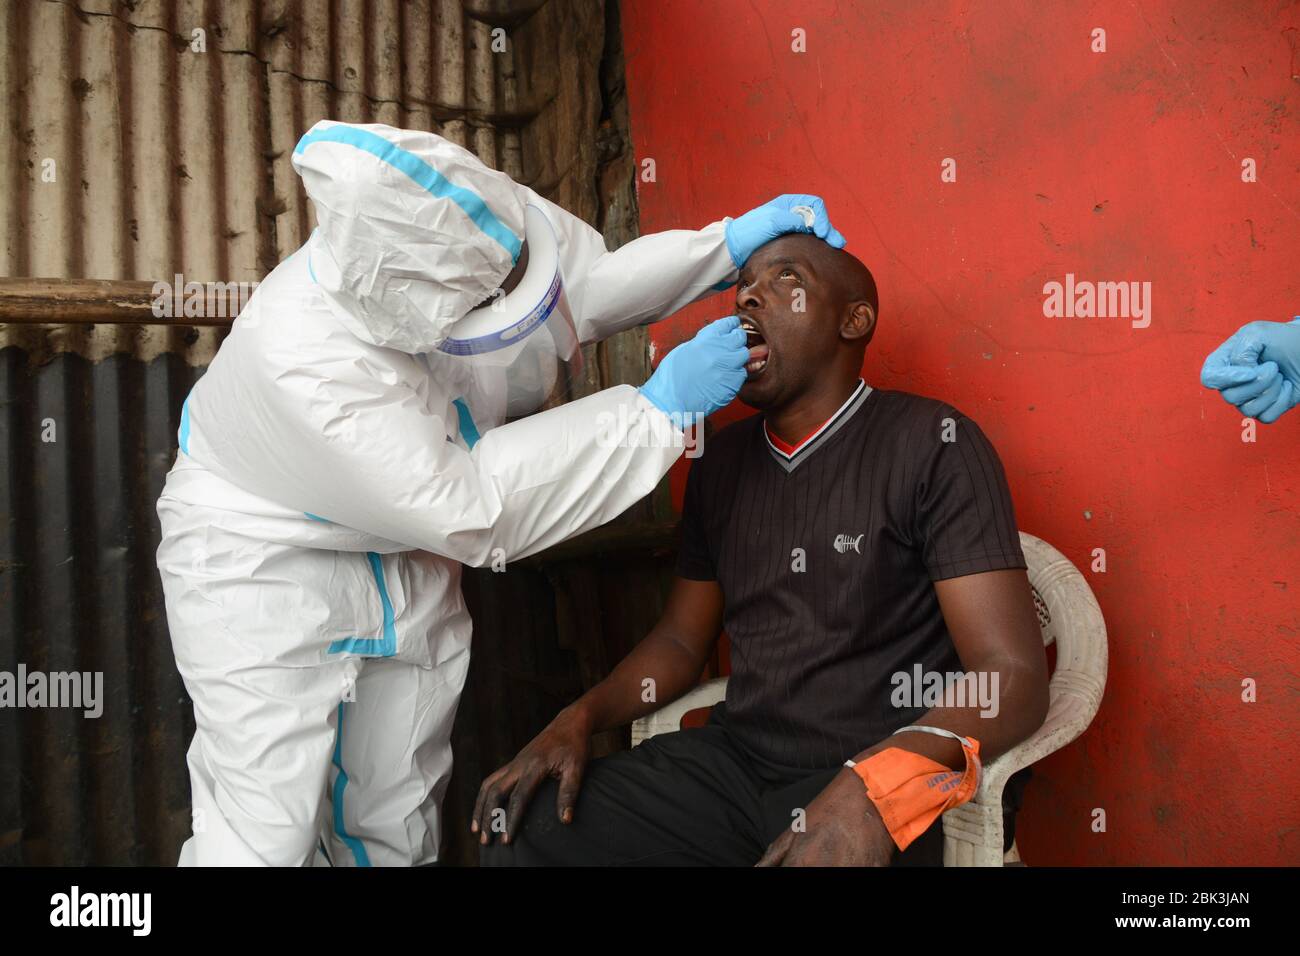 Un agent de santé effectue un test de bouche-à-oreille sur un résident pendant la pandémie du virus corona. Un test de masse des cas COVID-19 dans la région de Kawangware a été effectué sur les résidents. Jusqu'à présent, le Kenya a signalé 411 cas de coronavirus, 144 reprises et 17 décès. Banque D'Images